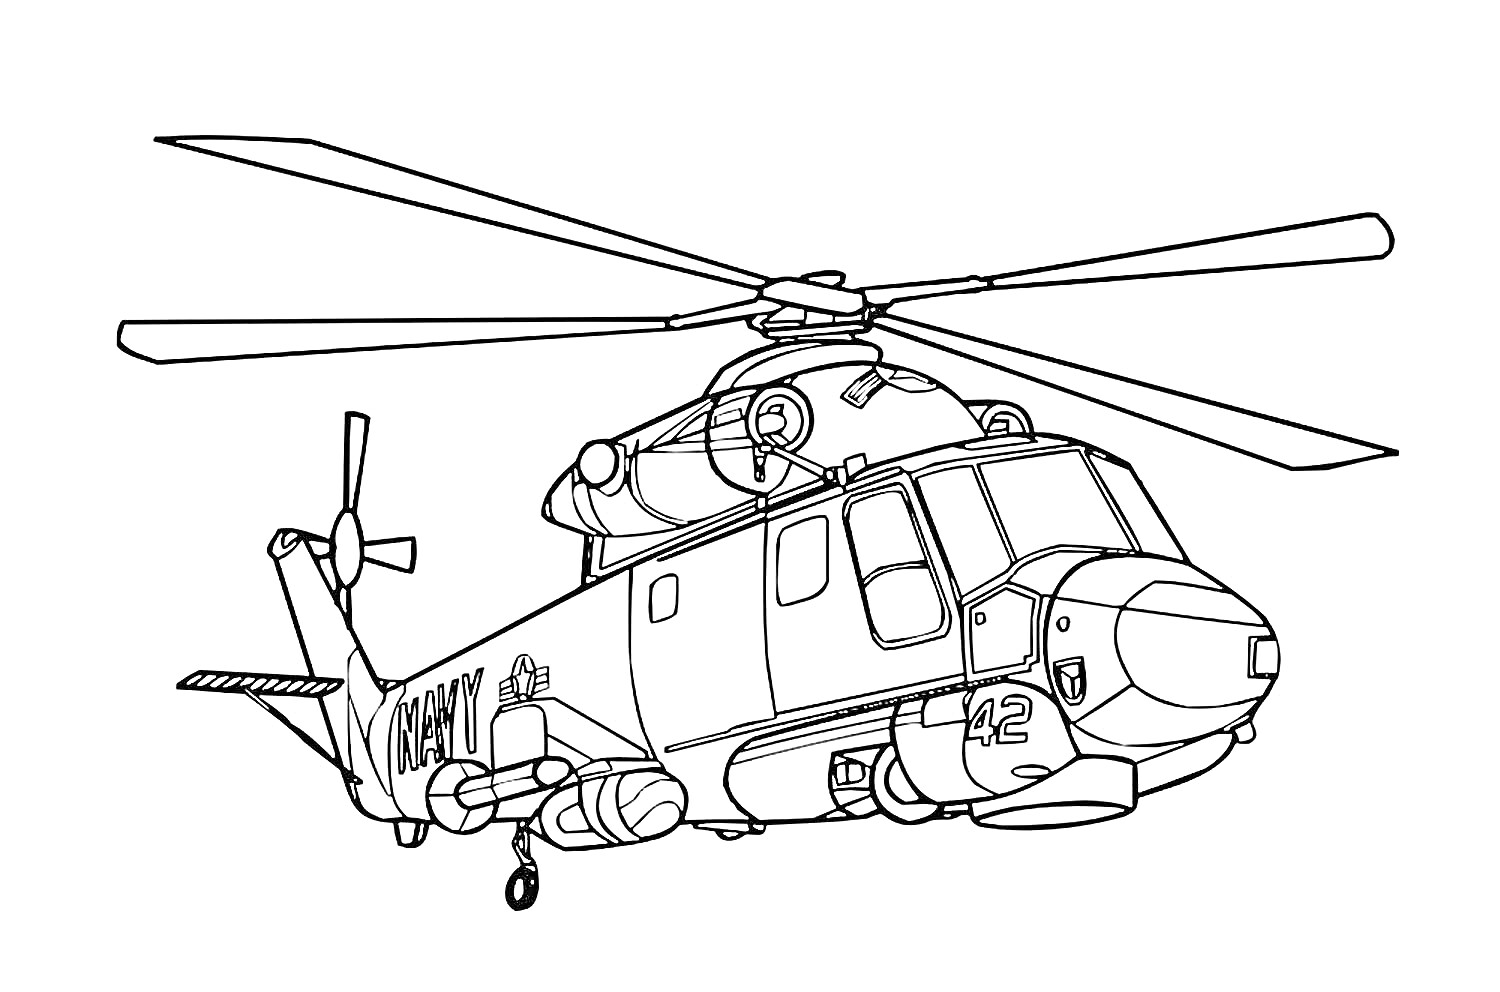 Раскраска Вертолет с деталями корпуса и ротора, боковой вид, военная тематика